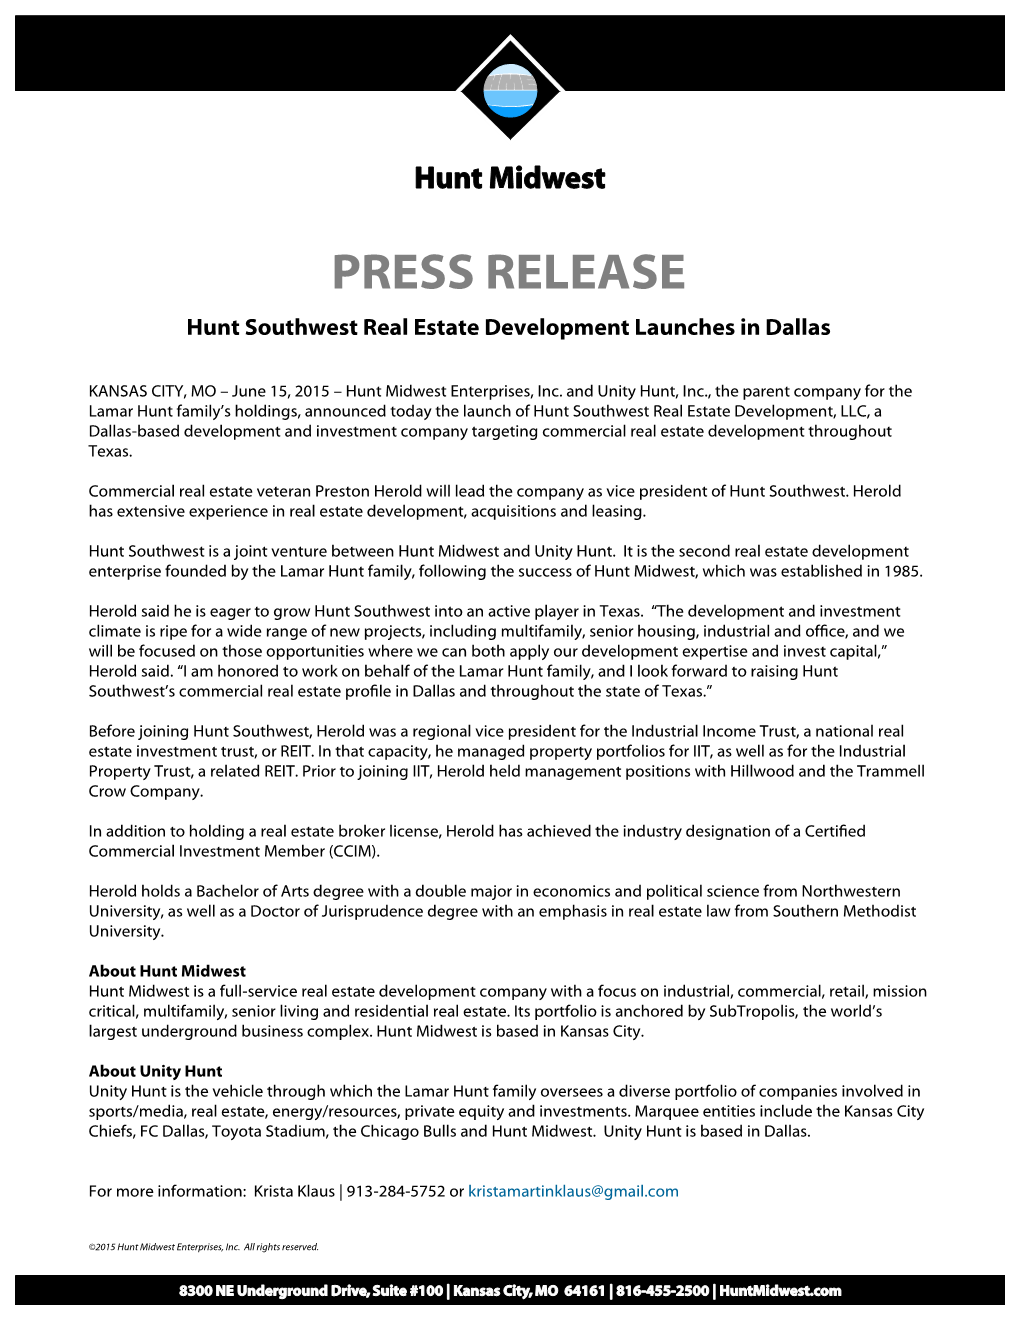 PRESS RELEASE Hunt Southwest Real Estate Development Launches in Dallas